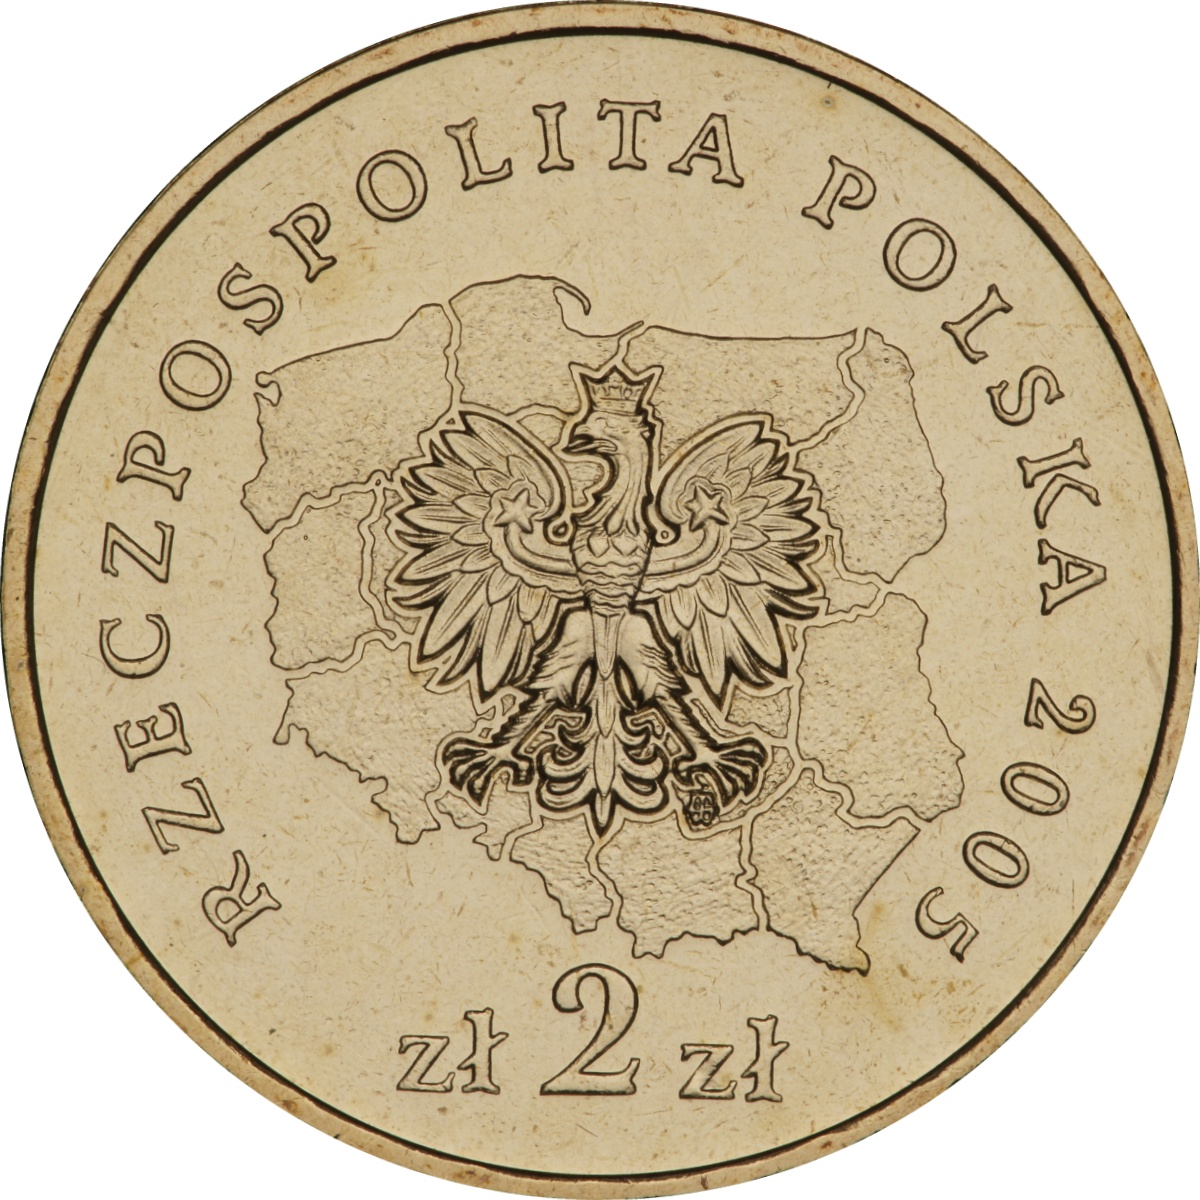 2zl-okolicznosciowe-wojewodztwo-swietokrzyskie-awers-monety